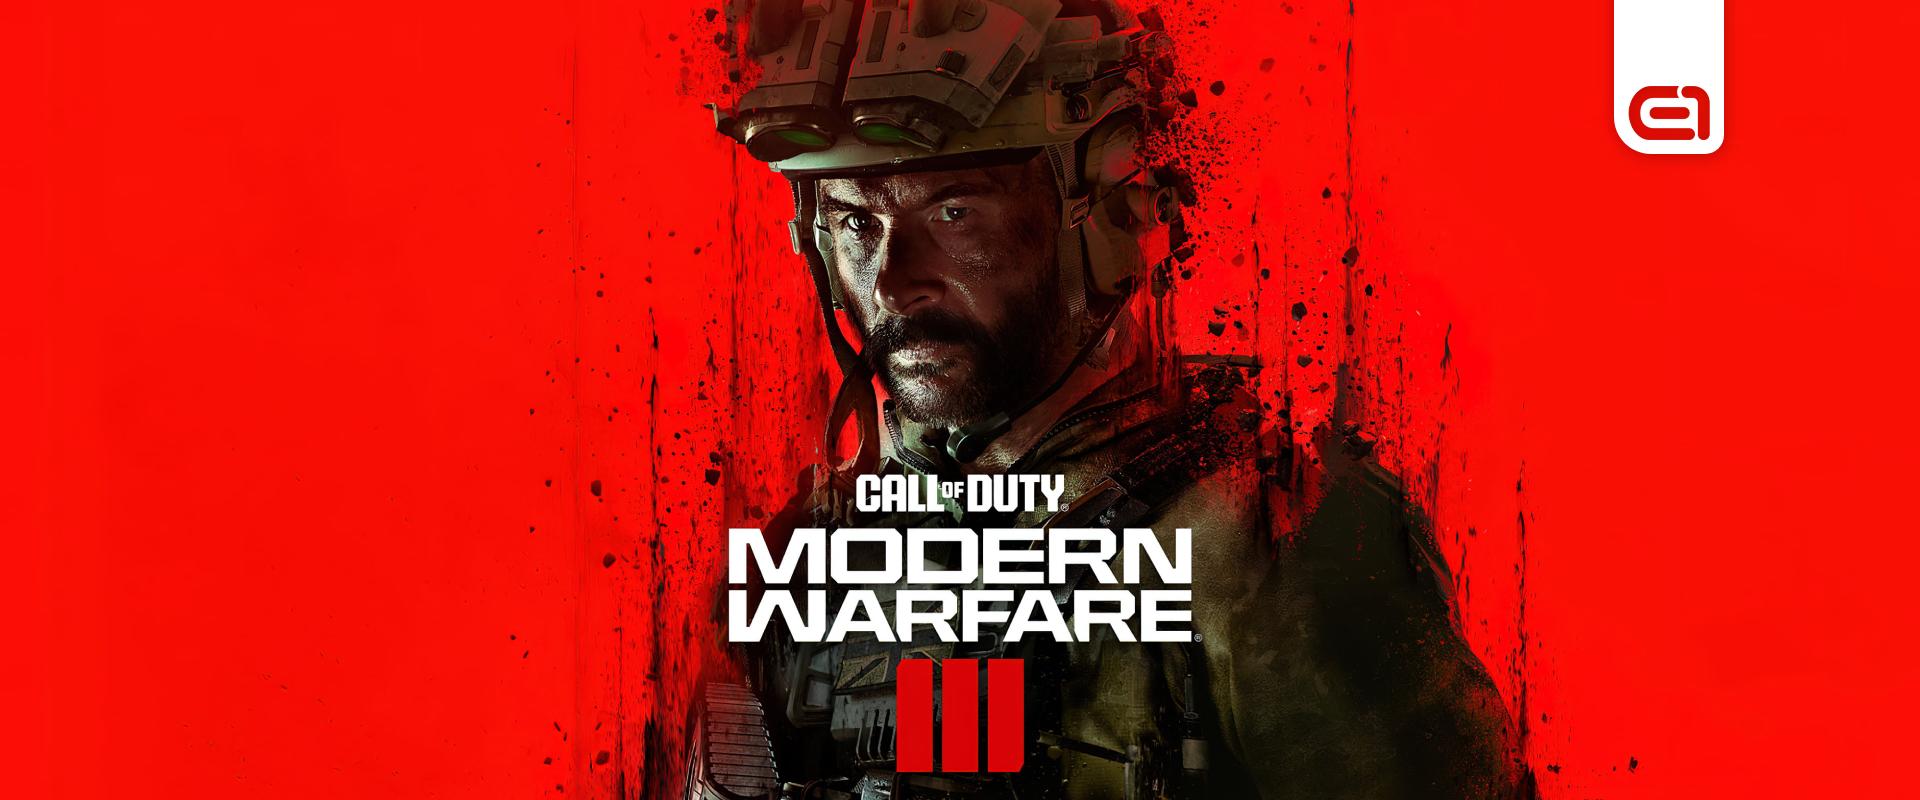 Összefoglaltuk mit jelent a Call of Duty számára az, hogy immár a Microsoft keze alatt a széria